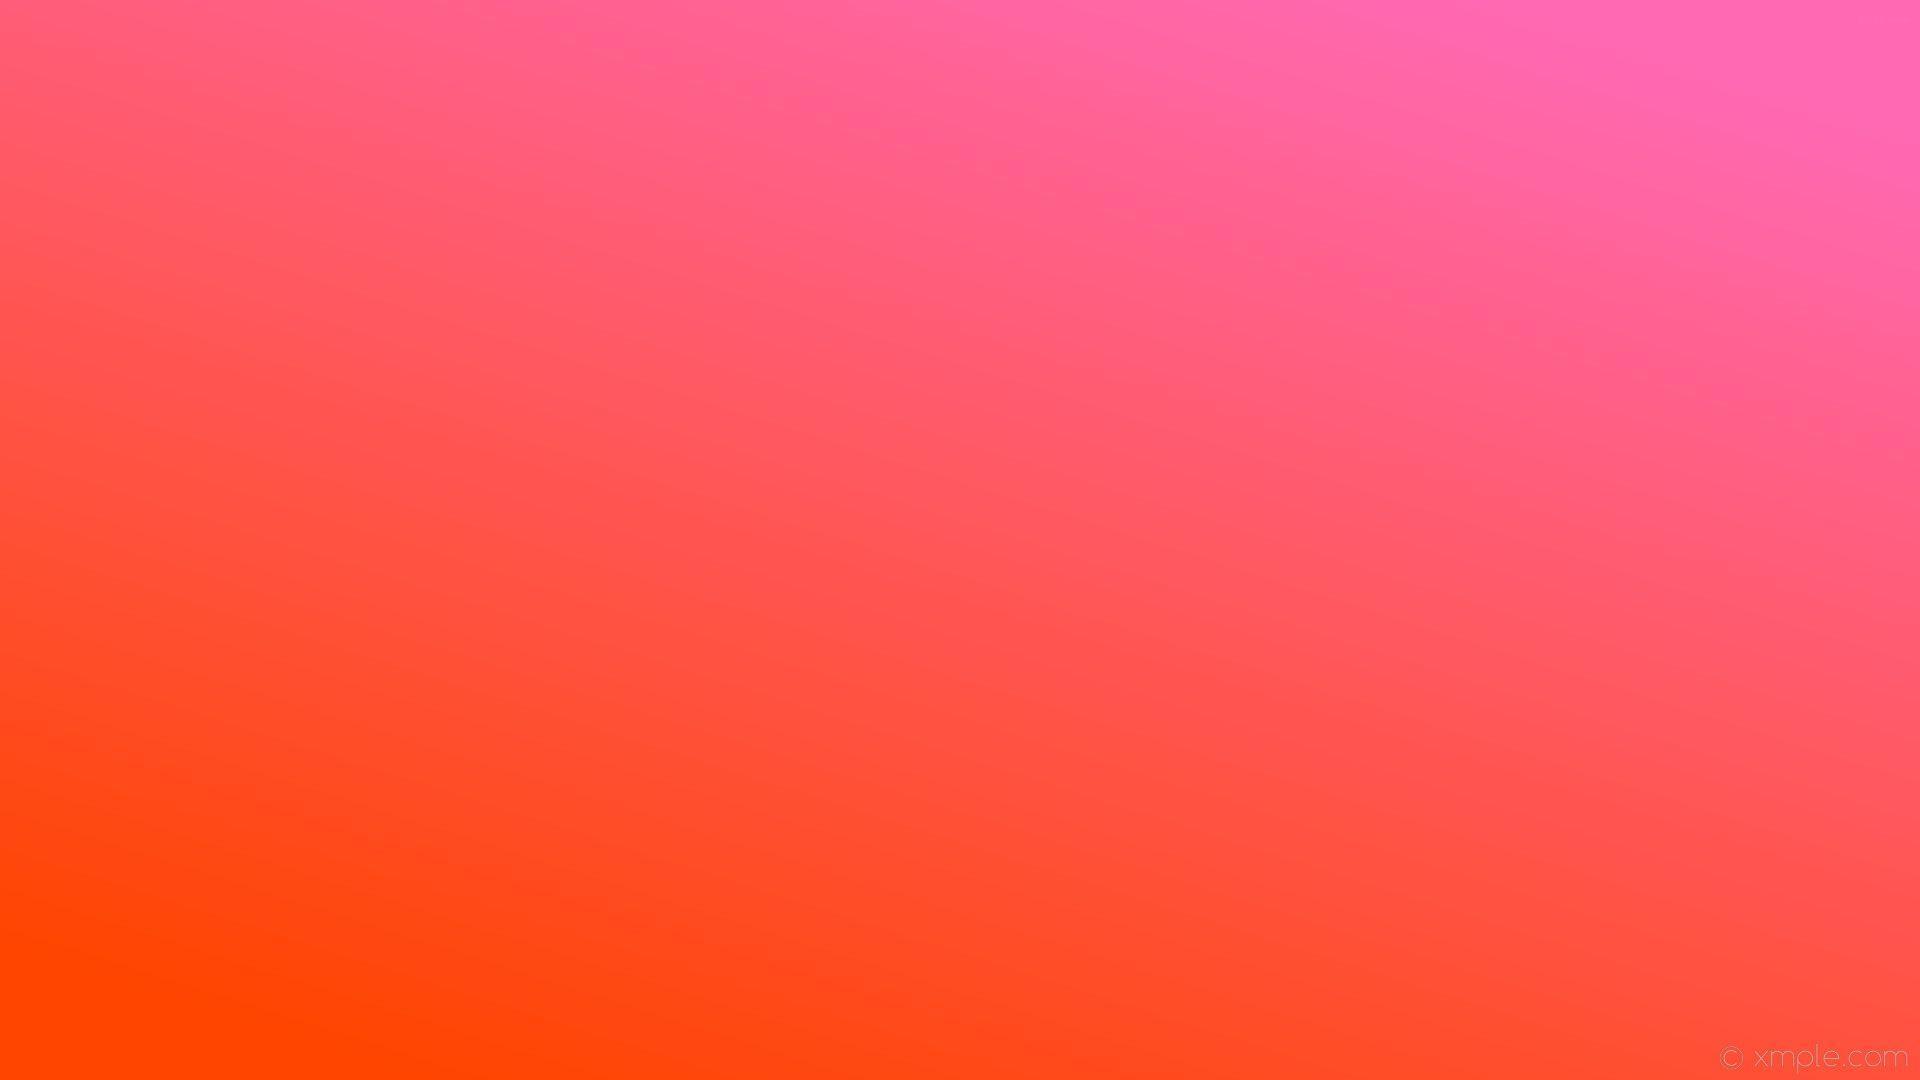 Hình nền màu hồng cam là lựa chọn hoàn hảo cho những ai yêu thích sự dịu dàng, nữ tính và trẻ trung. Tông màu ấm áp này sẽ mang lại cảm giác thư giãn cho mọi người khi sử dụng điện thoại hoặc máy tính. Tiết kiệm thời gian tìm kiếm, hãy truy cập ngay để tải về những hình nền đẹp nhất!